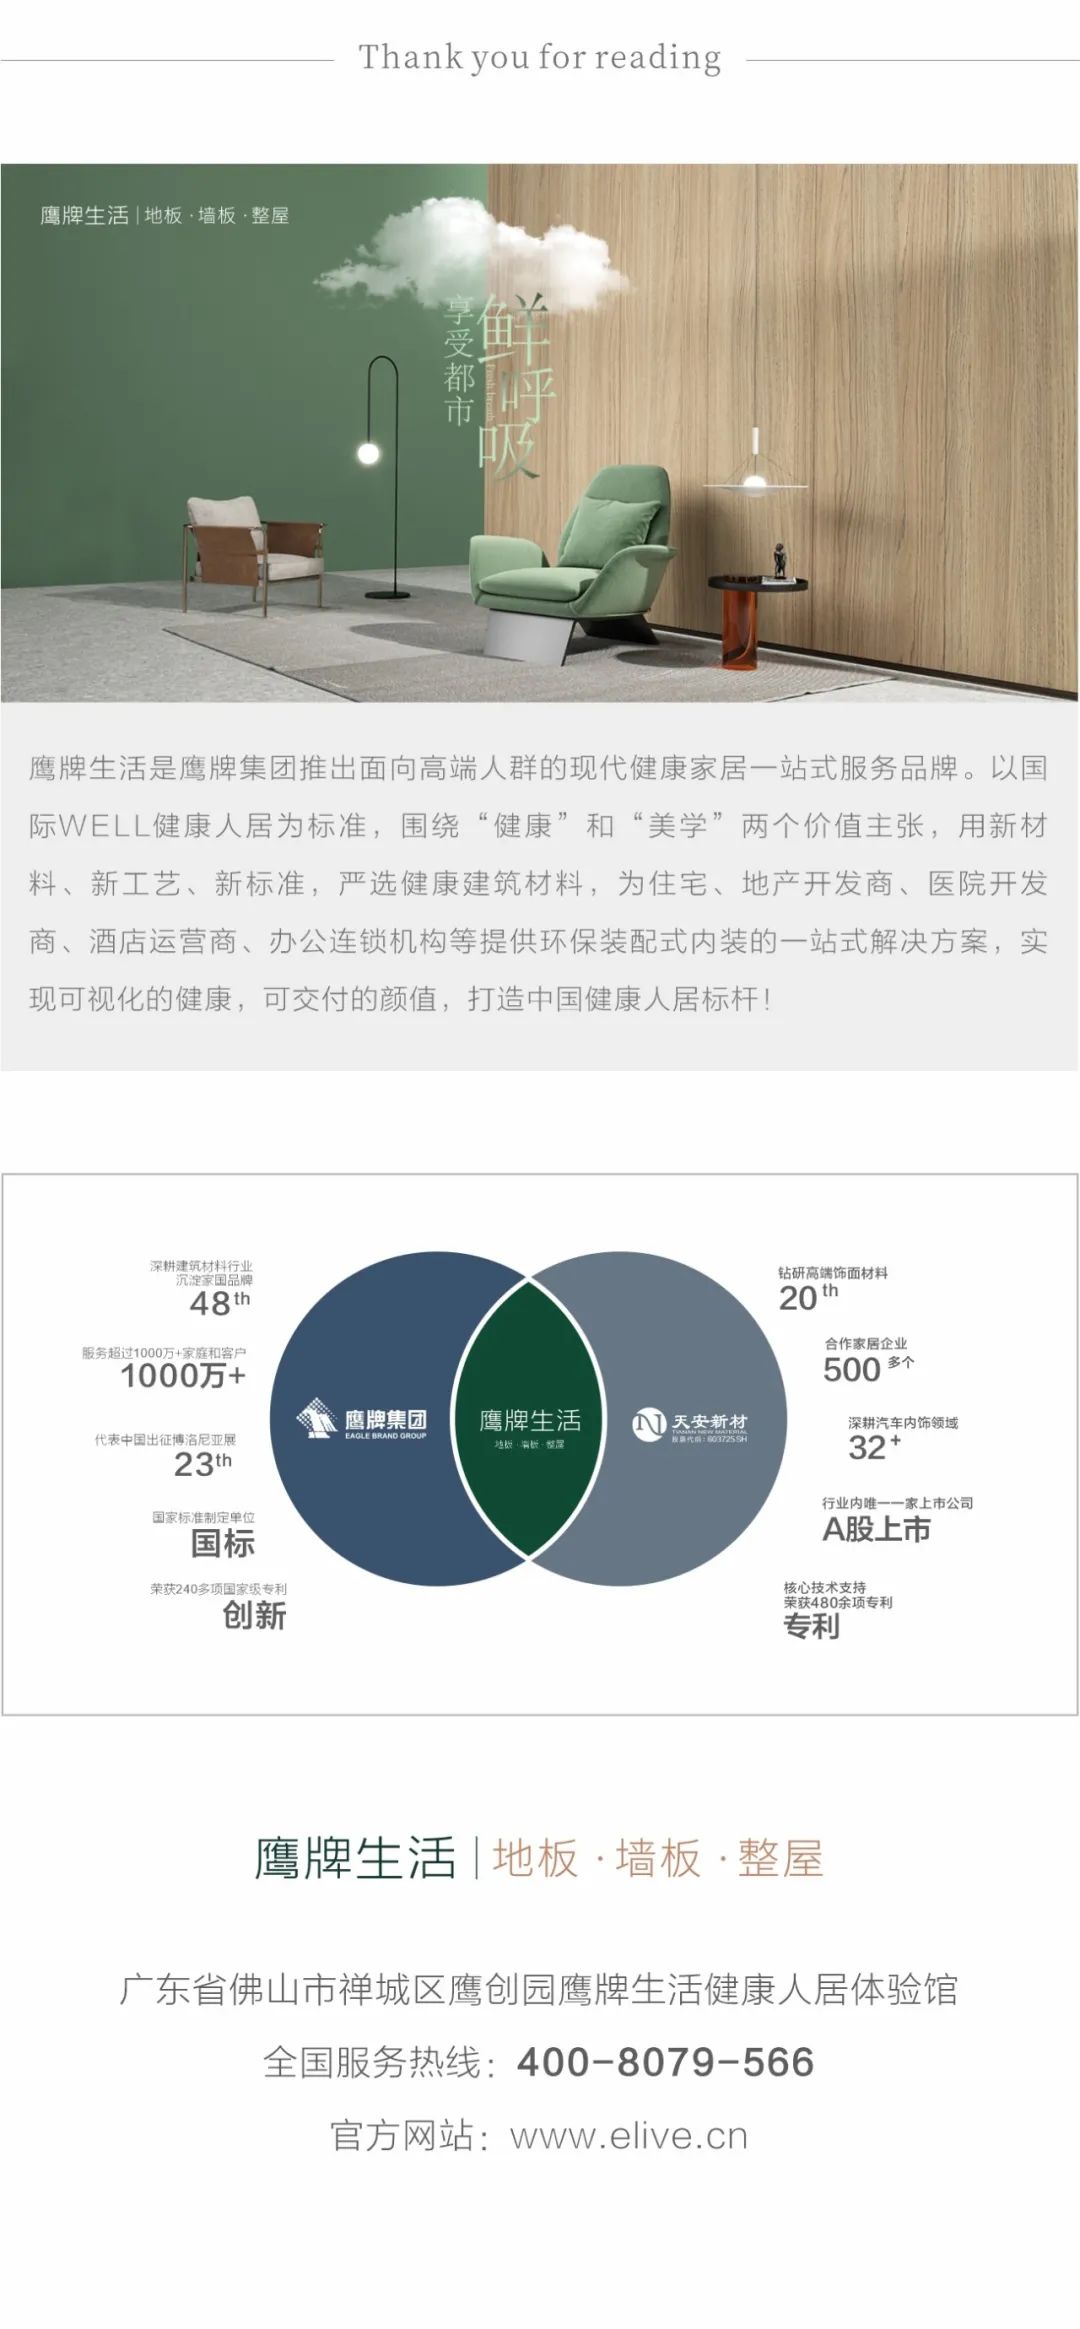 大咖来访|云米全屋互联网家电创始人&CEO陈小平一行到访鹰牌生活健康人居体验馆考察、交流(图3)